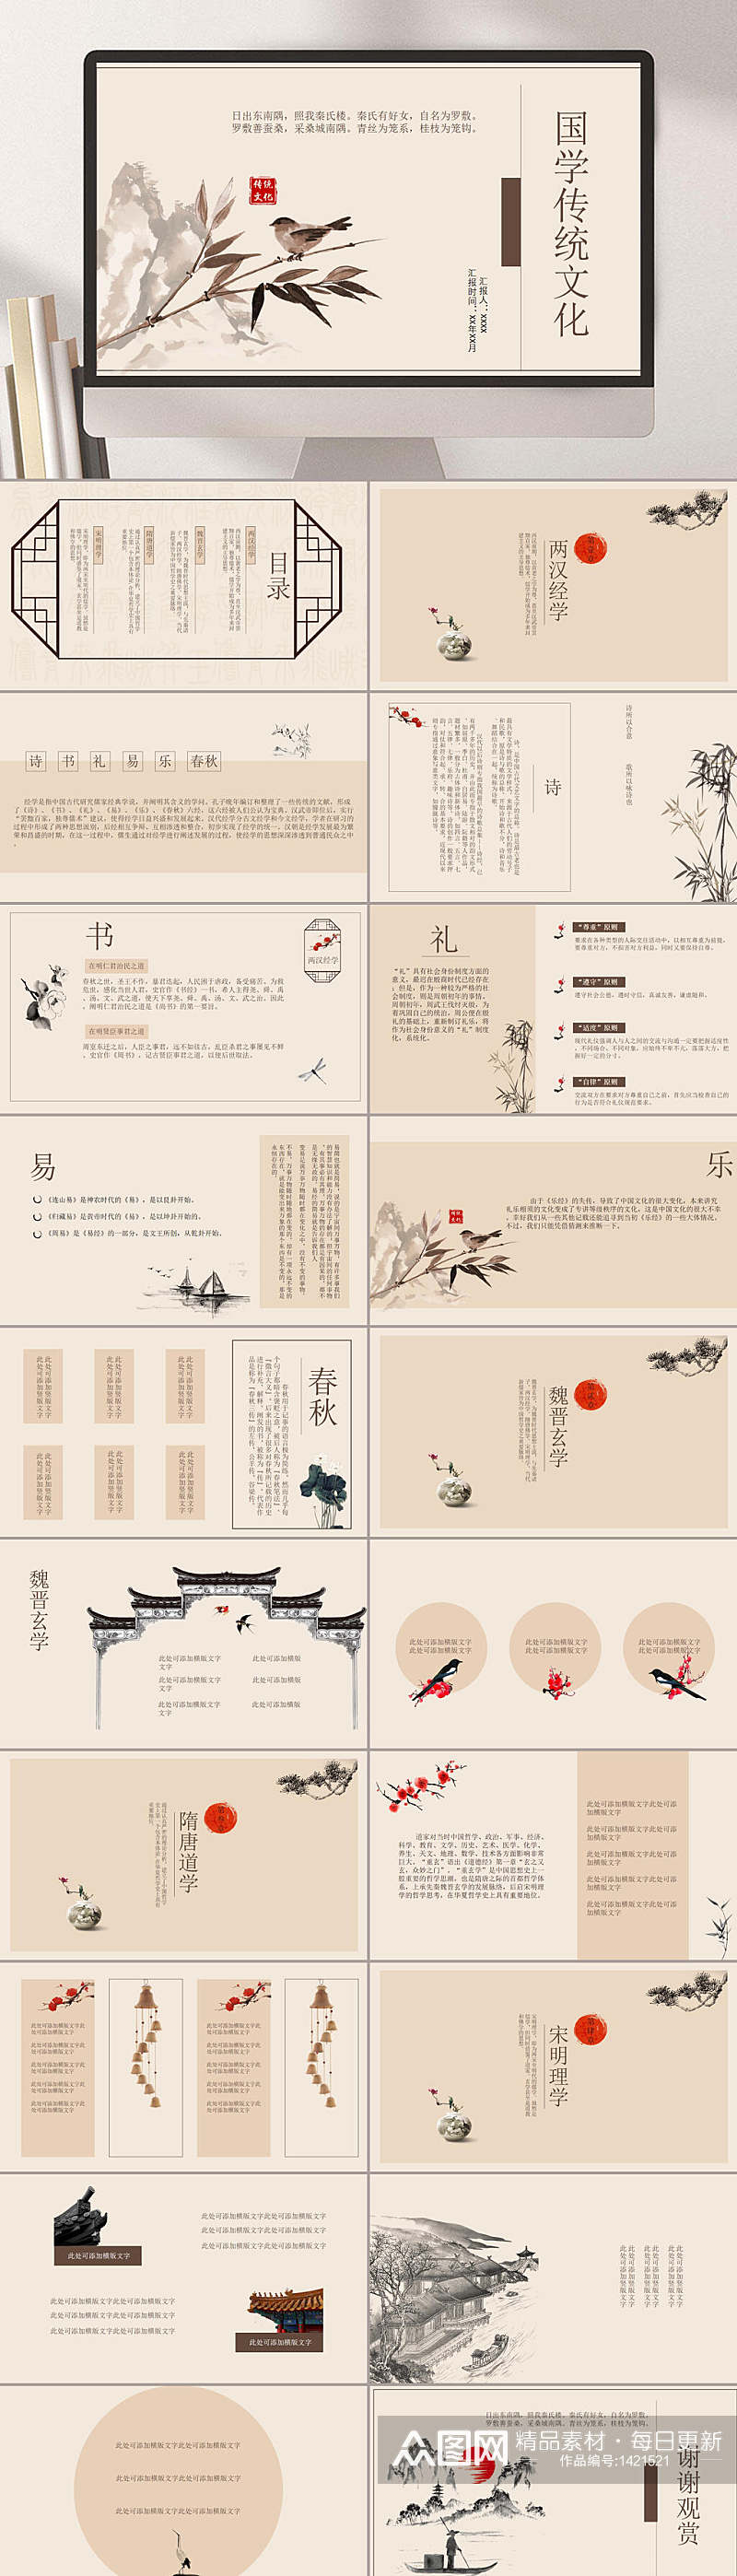 水墨禅意中国风国学传统文化模板PPT素材